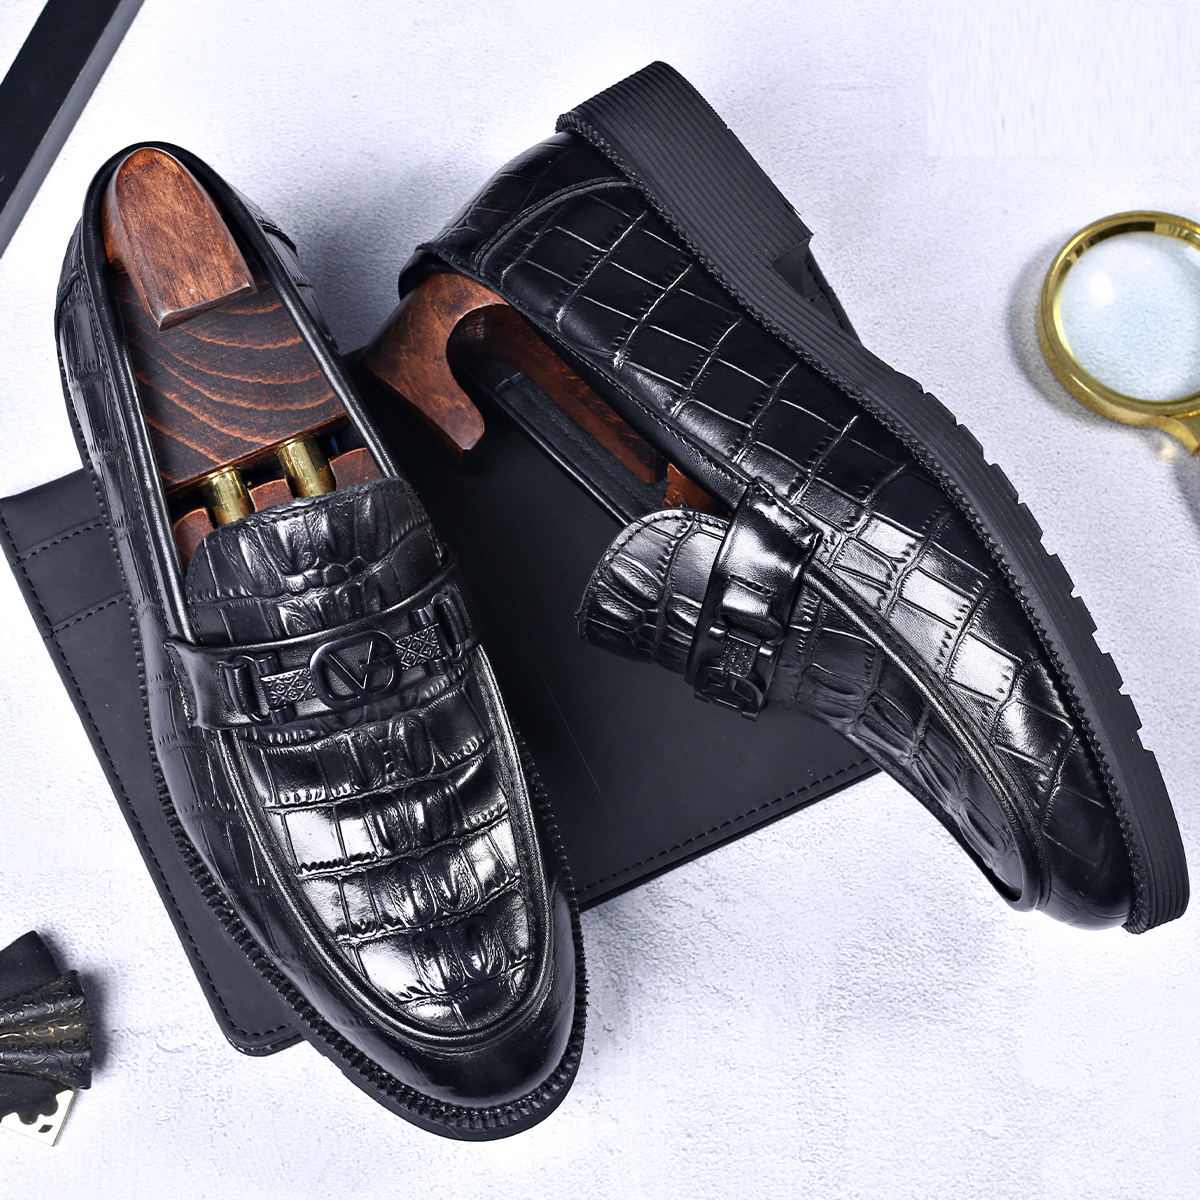 leather convenience shoes men's fashion shoes business dress men's shoes Zapatos de hombre de negocios